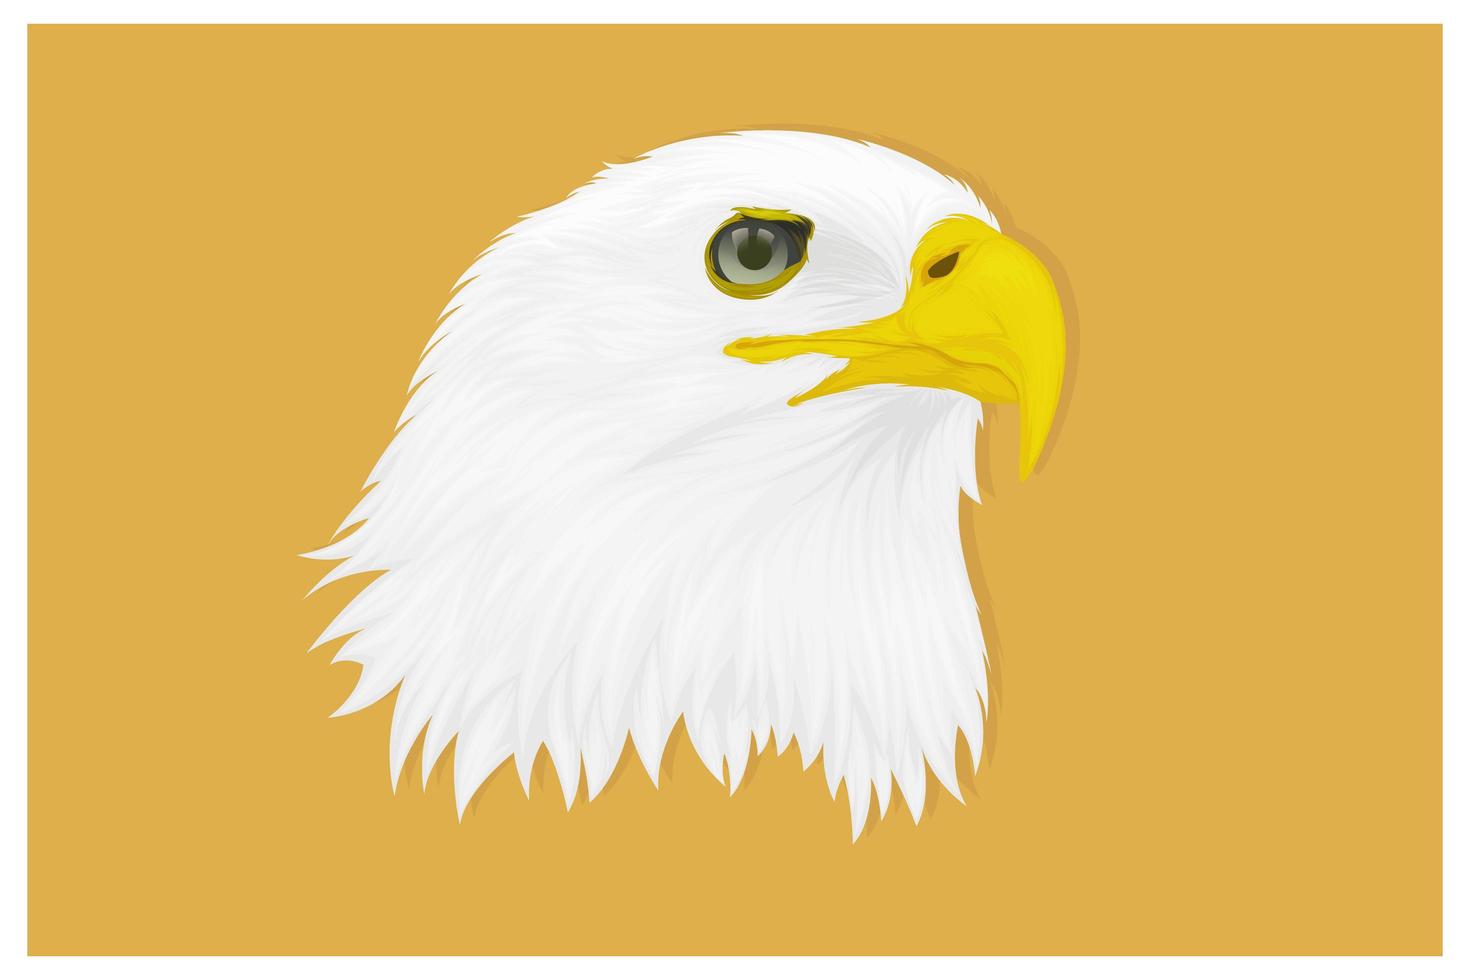 Adler mit scharfem Blick Handzeichnung vektor